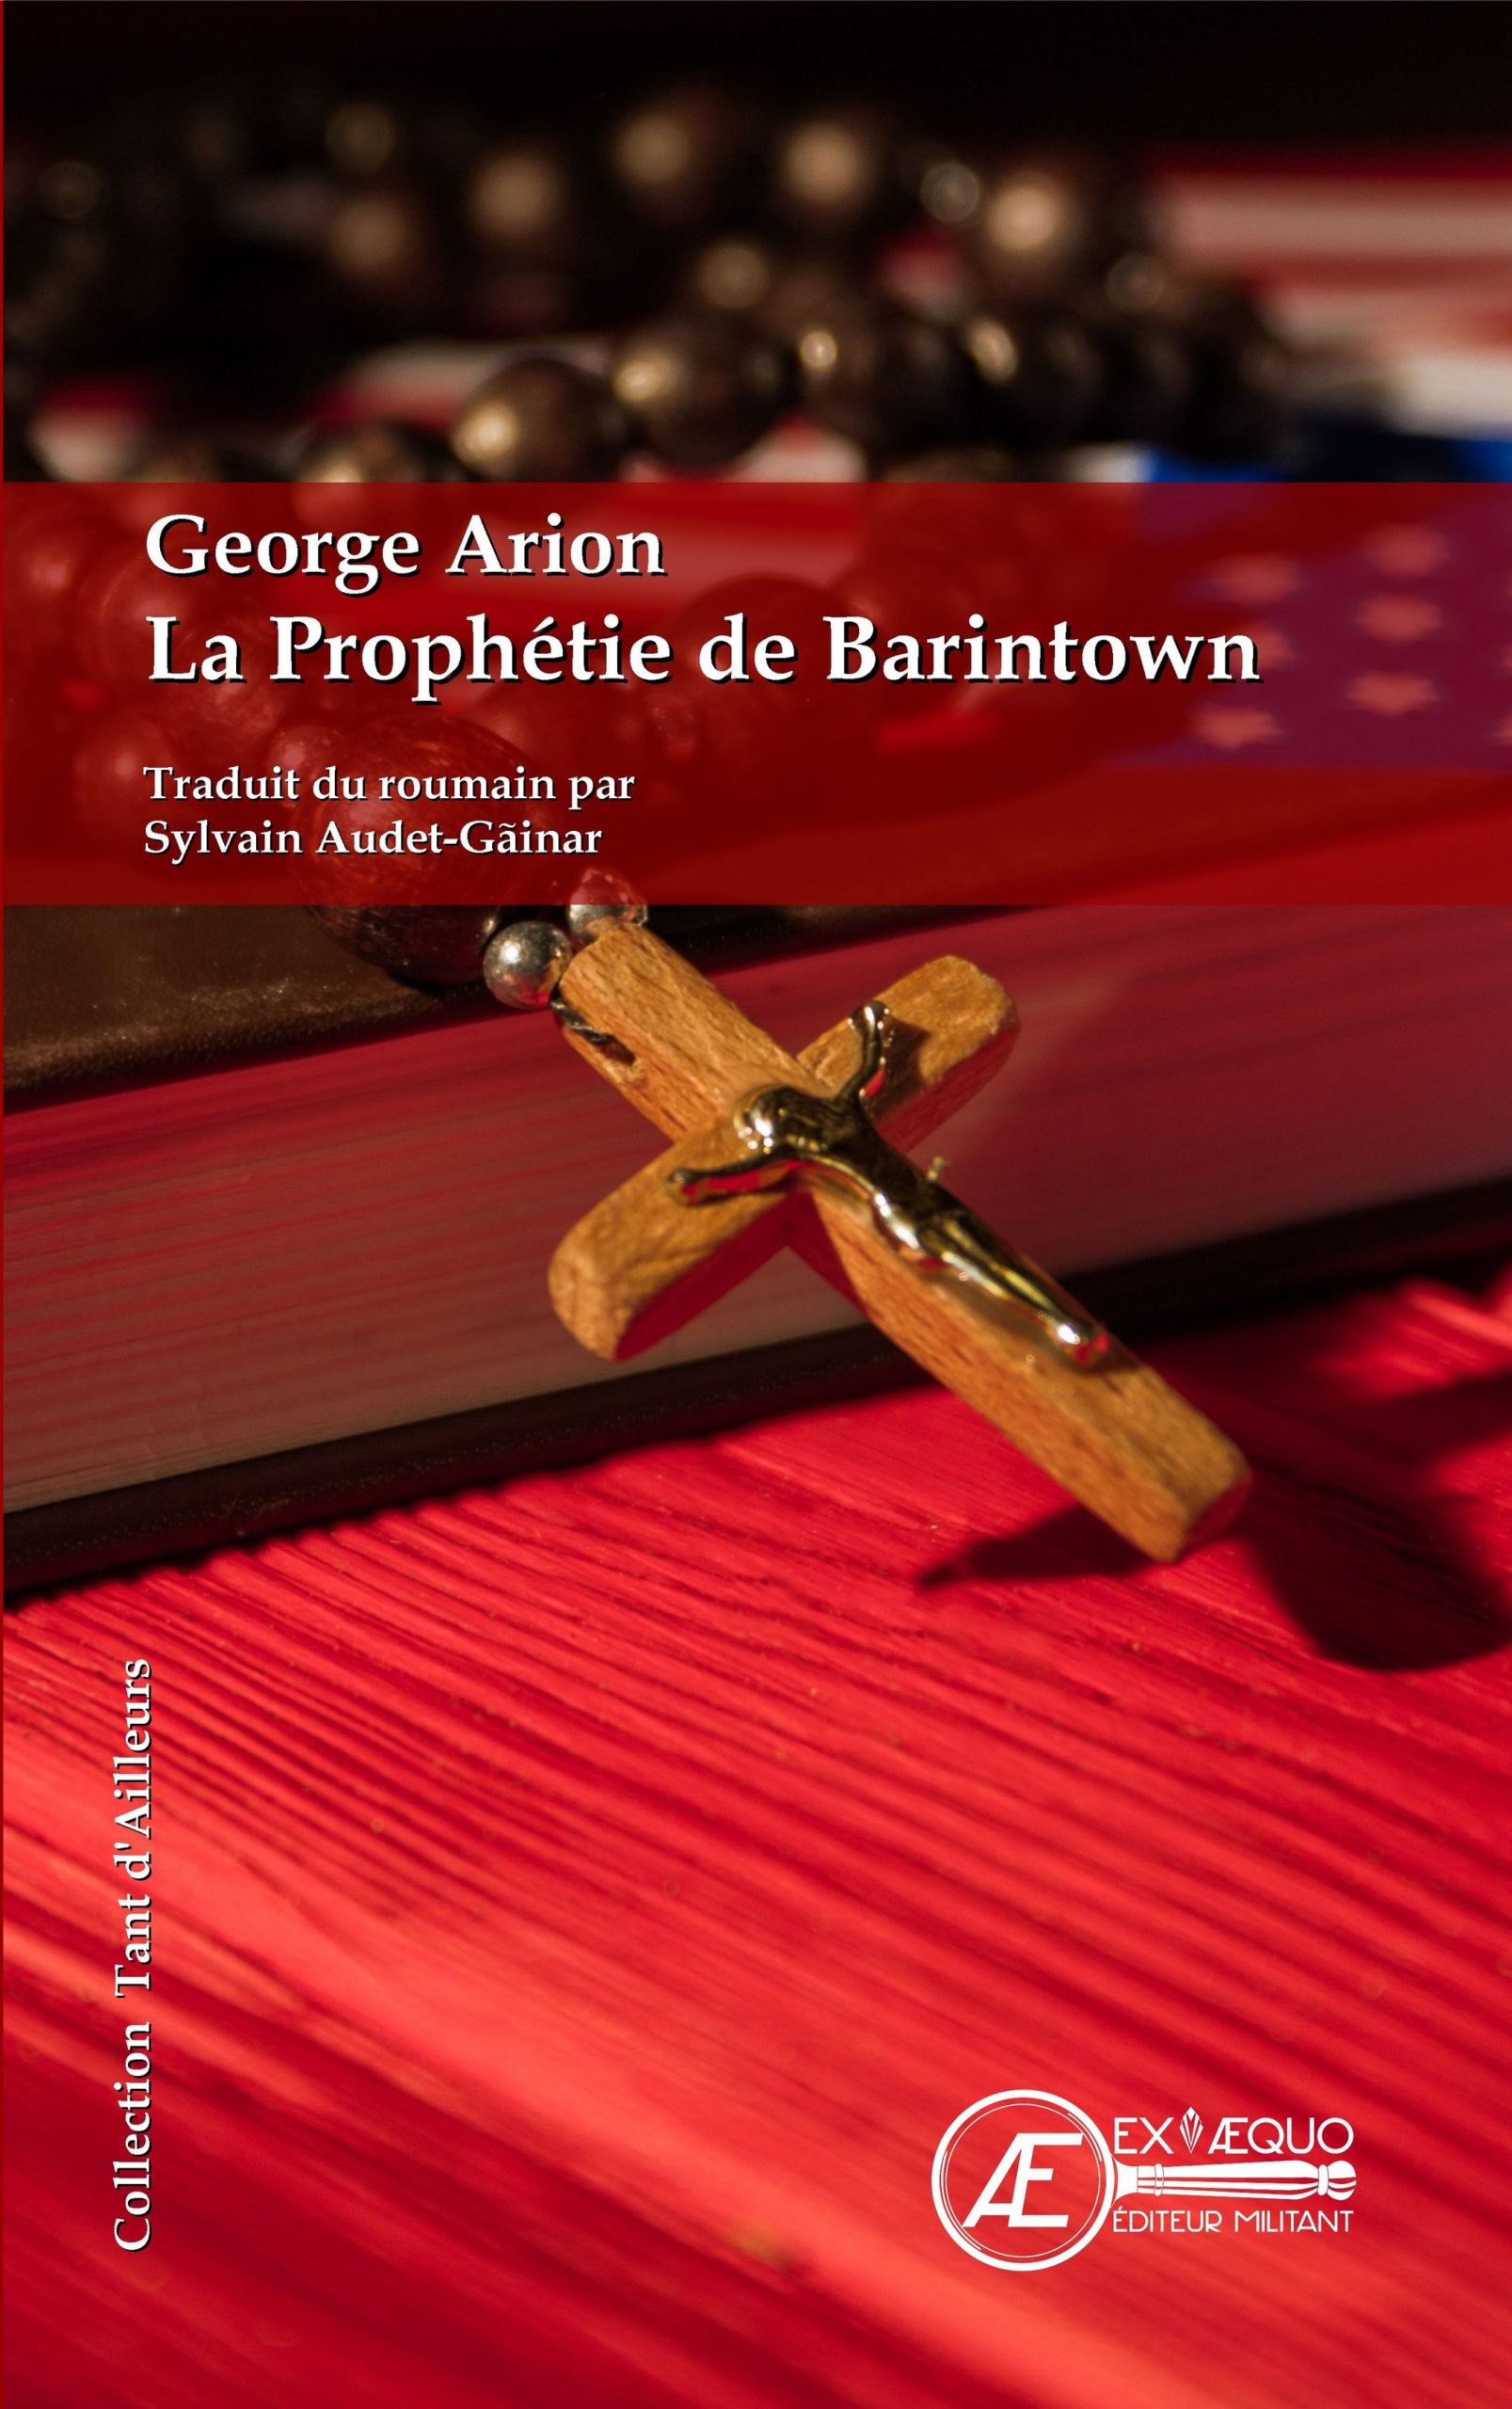 You are currently viewing La Prophétie de Barintown, de George Arion et Sylvain Audet